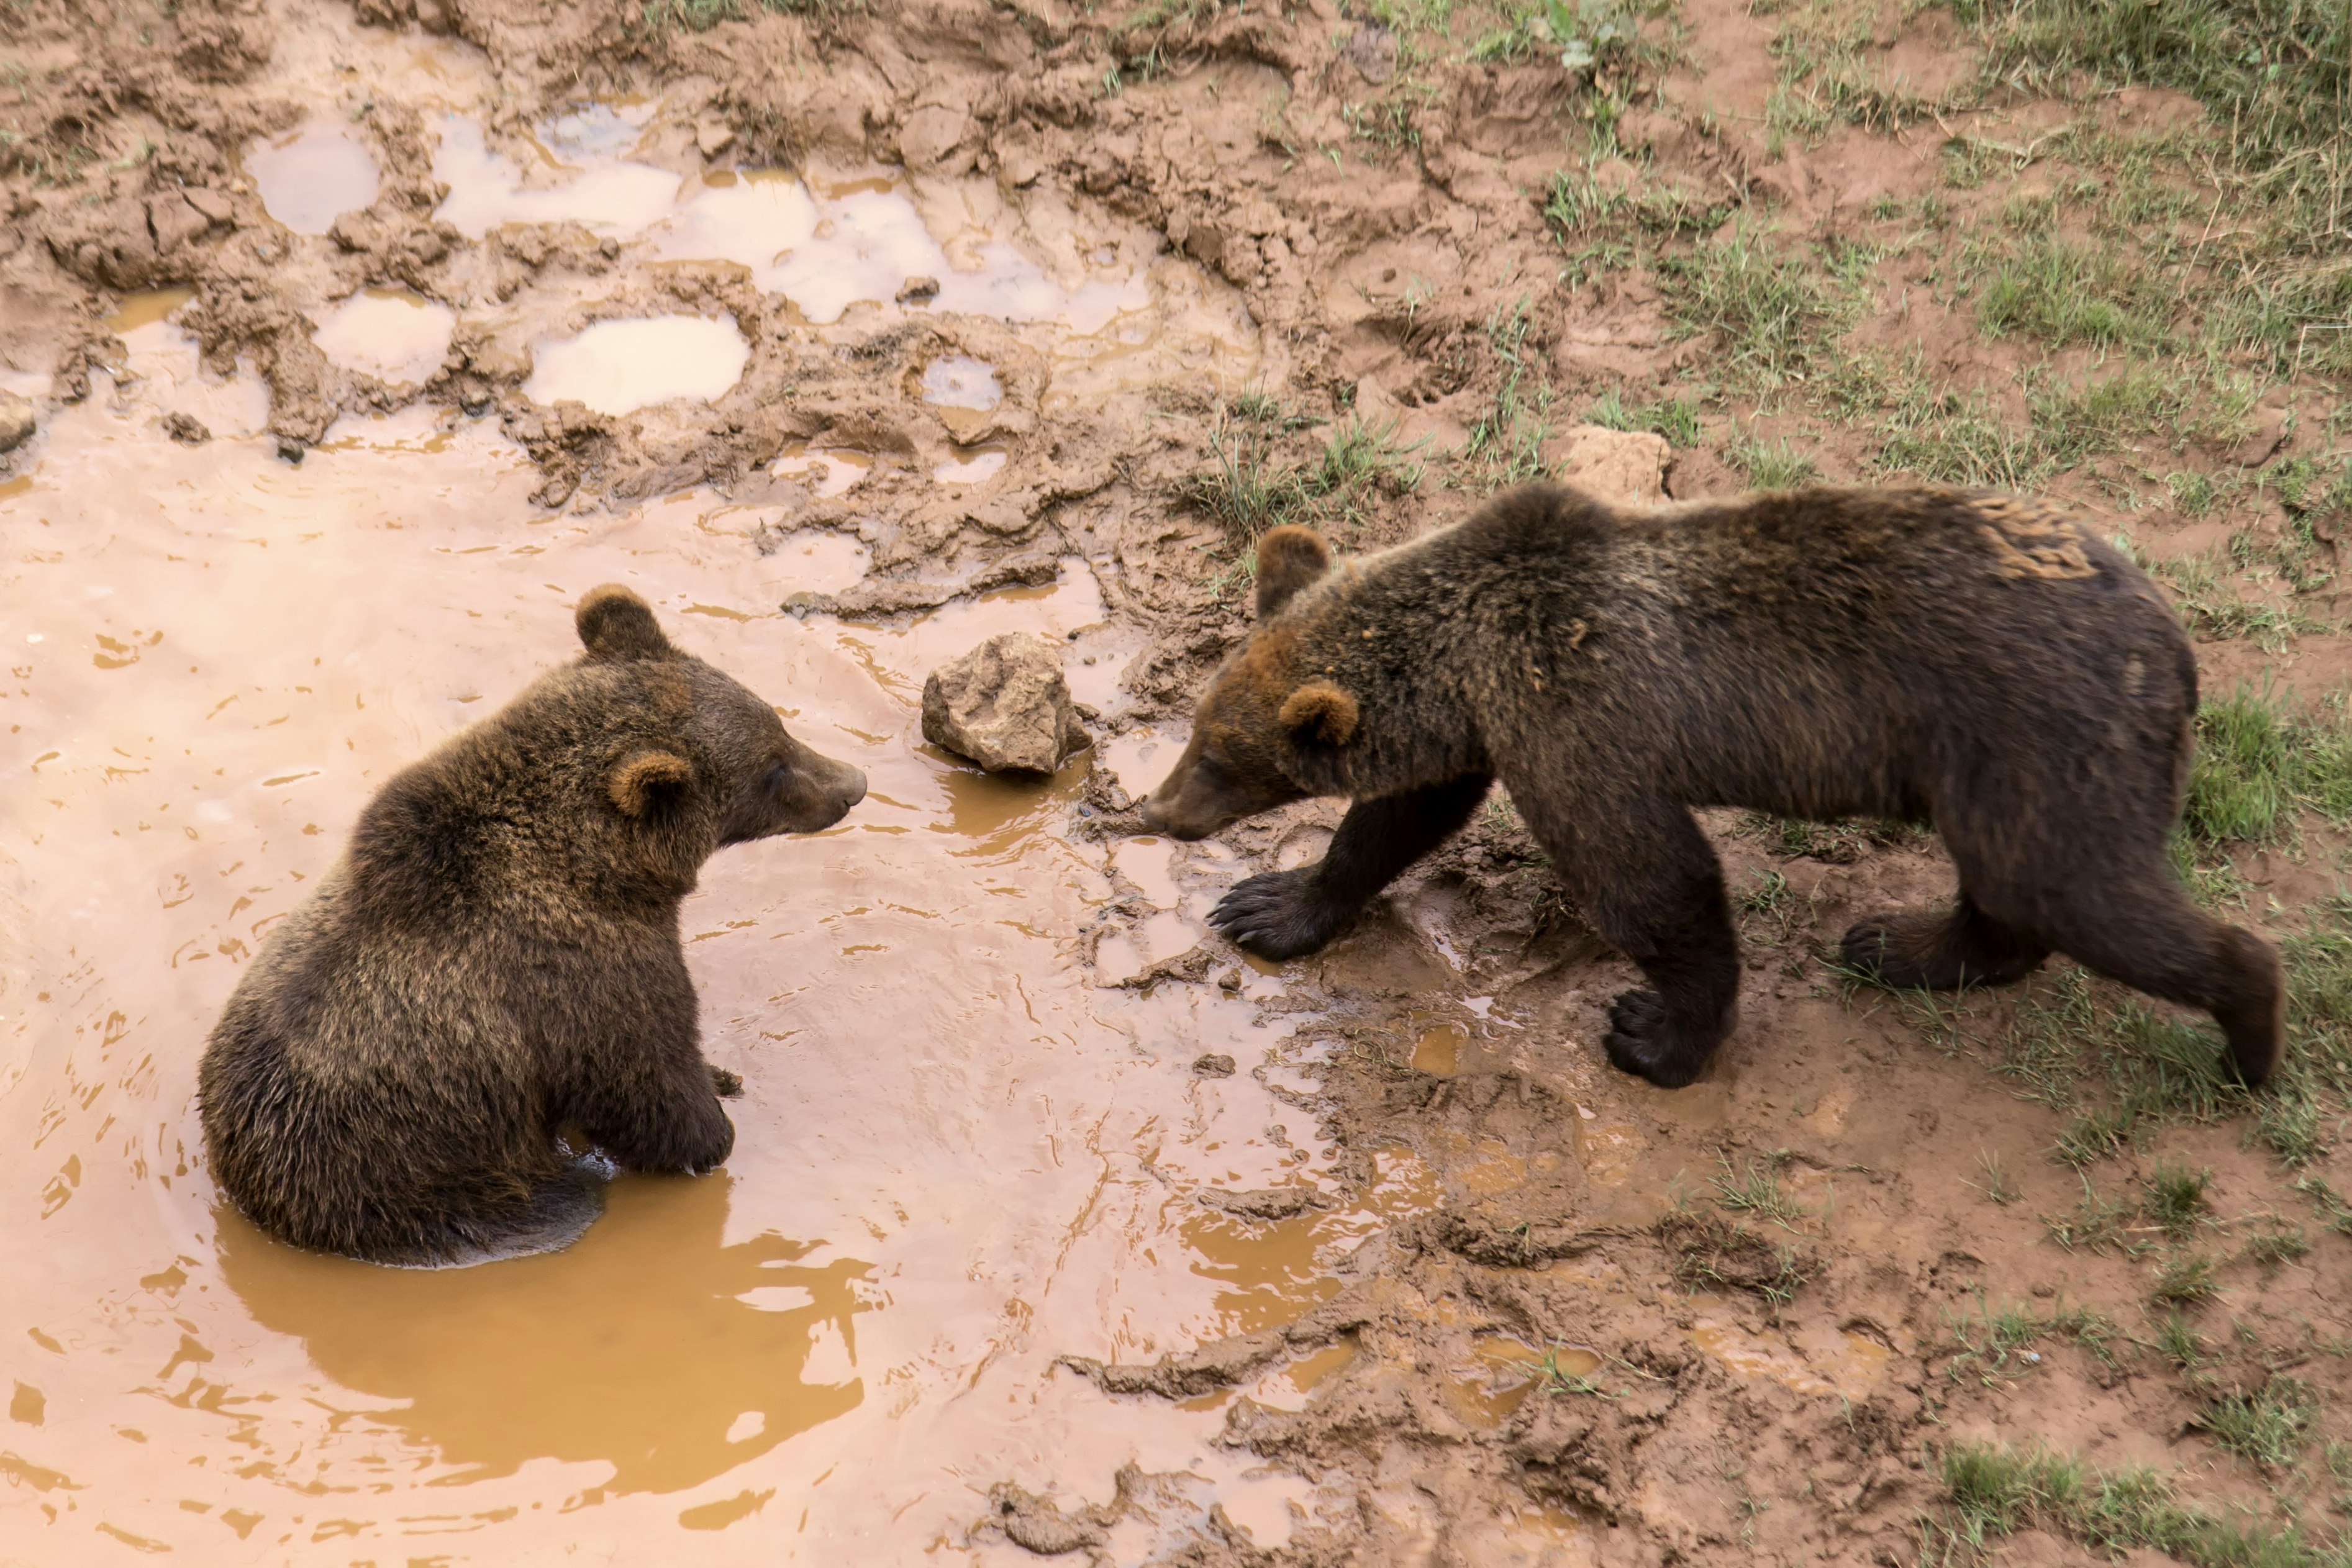 Brown bears taking a mud bath